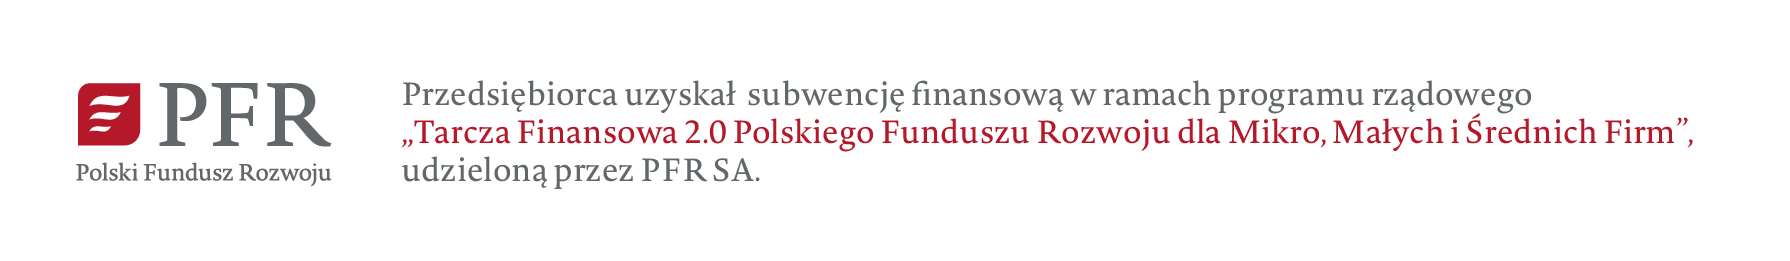 Przedsiębiorca uzyskał subwencję nansową w ramach programu rządowego
„Tarcza Finansowa 2.0 Polskiego Funduszu Rozwoju dla Mikro, Małych i Średnich Firm”,
udzieloną przez PFR SA.